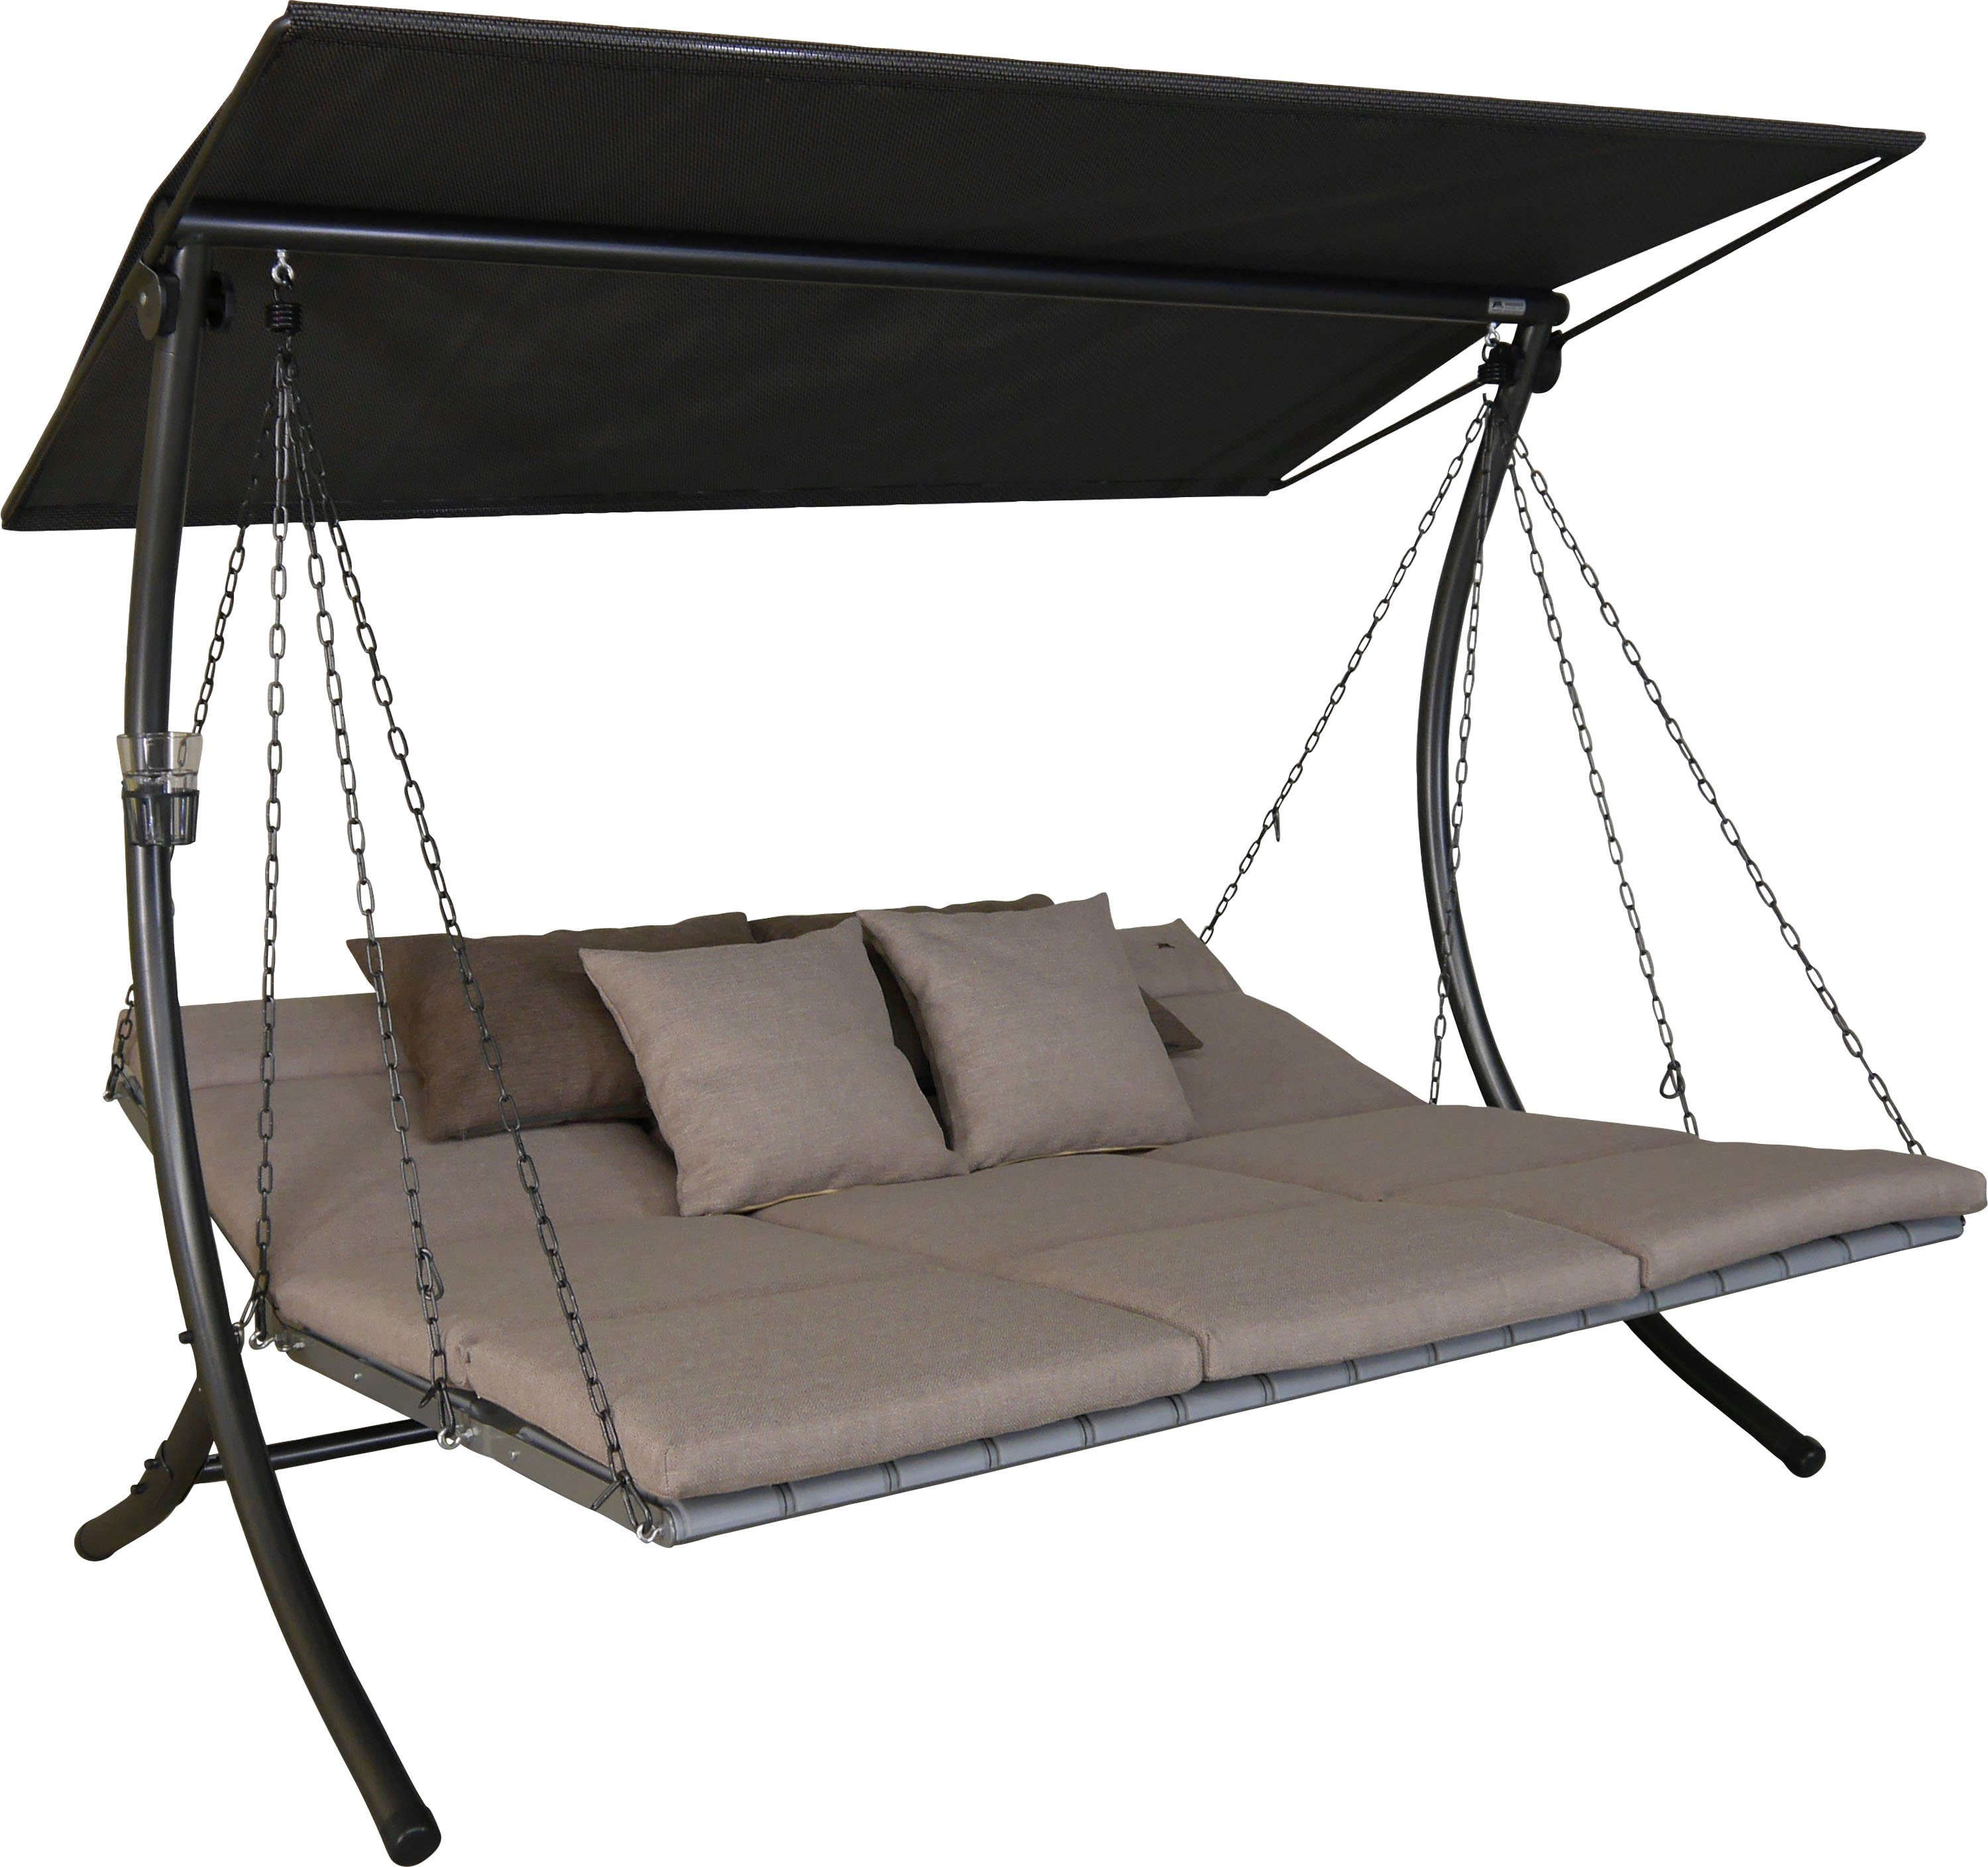 Angerer Freizeitmöbel Hollywoodschaukel Luxus Smart sand, 3-Sitzer,  Bettfunktion, BxTxH: 210x145x160 cm